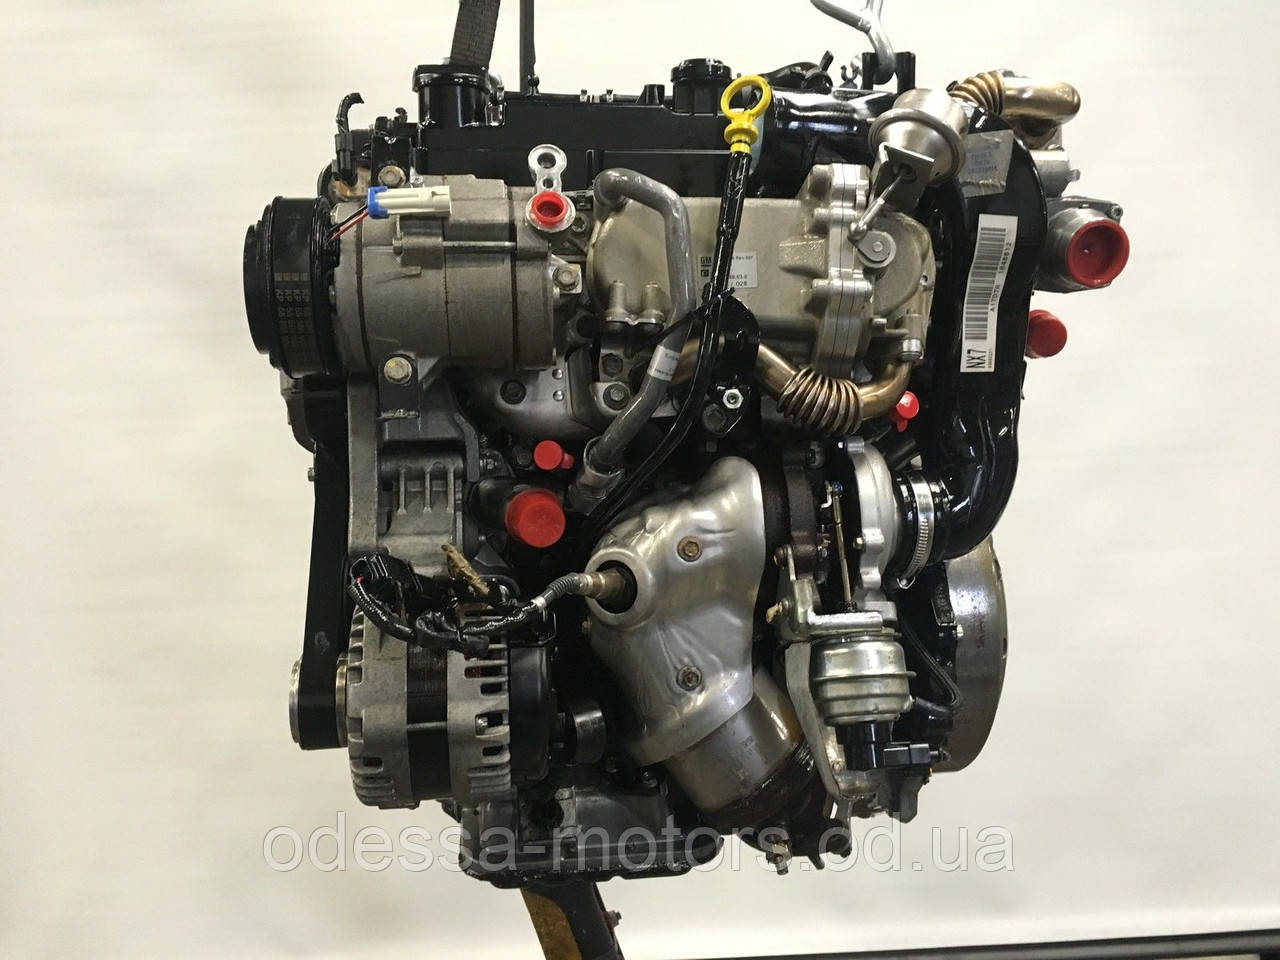 Двигатель opel 1.2. Двигатель Опель а 17 DTS. A17dts. Двигатель контрактный на Опель Мокка.